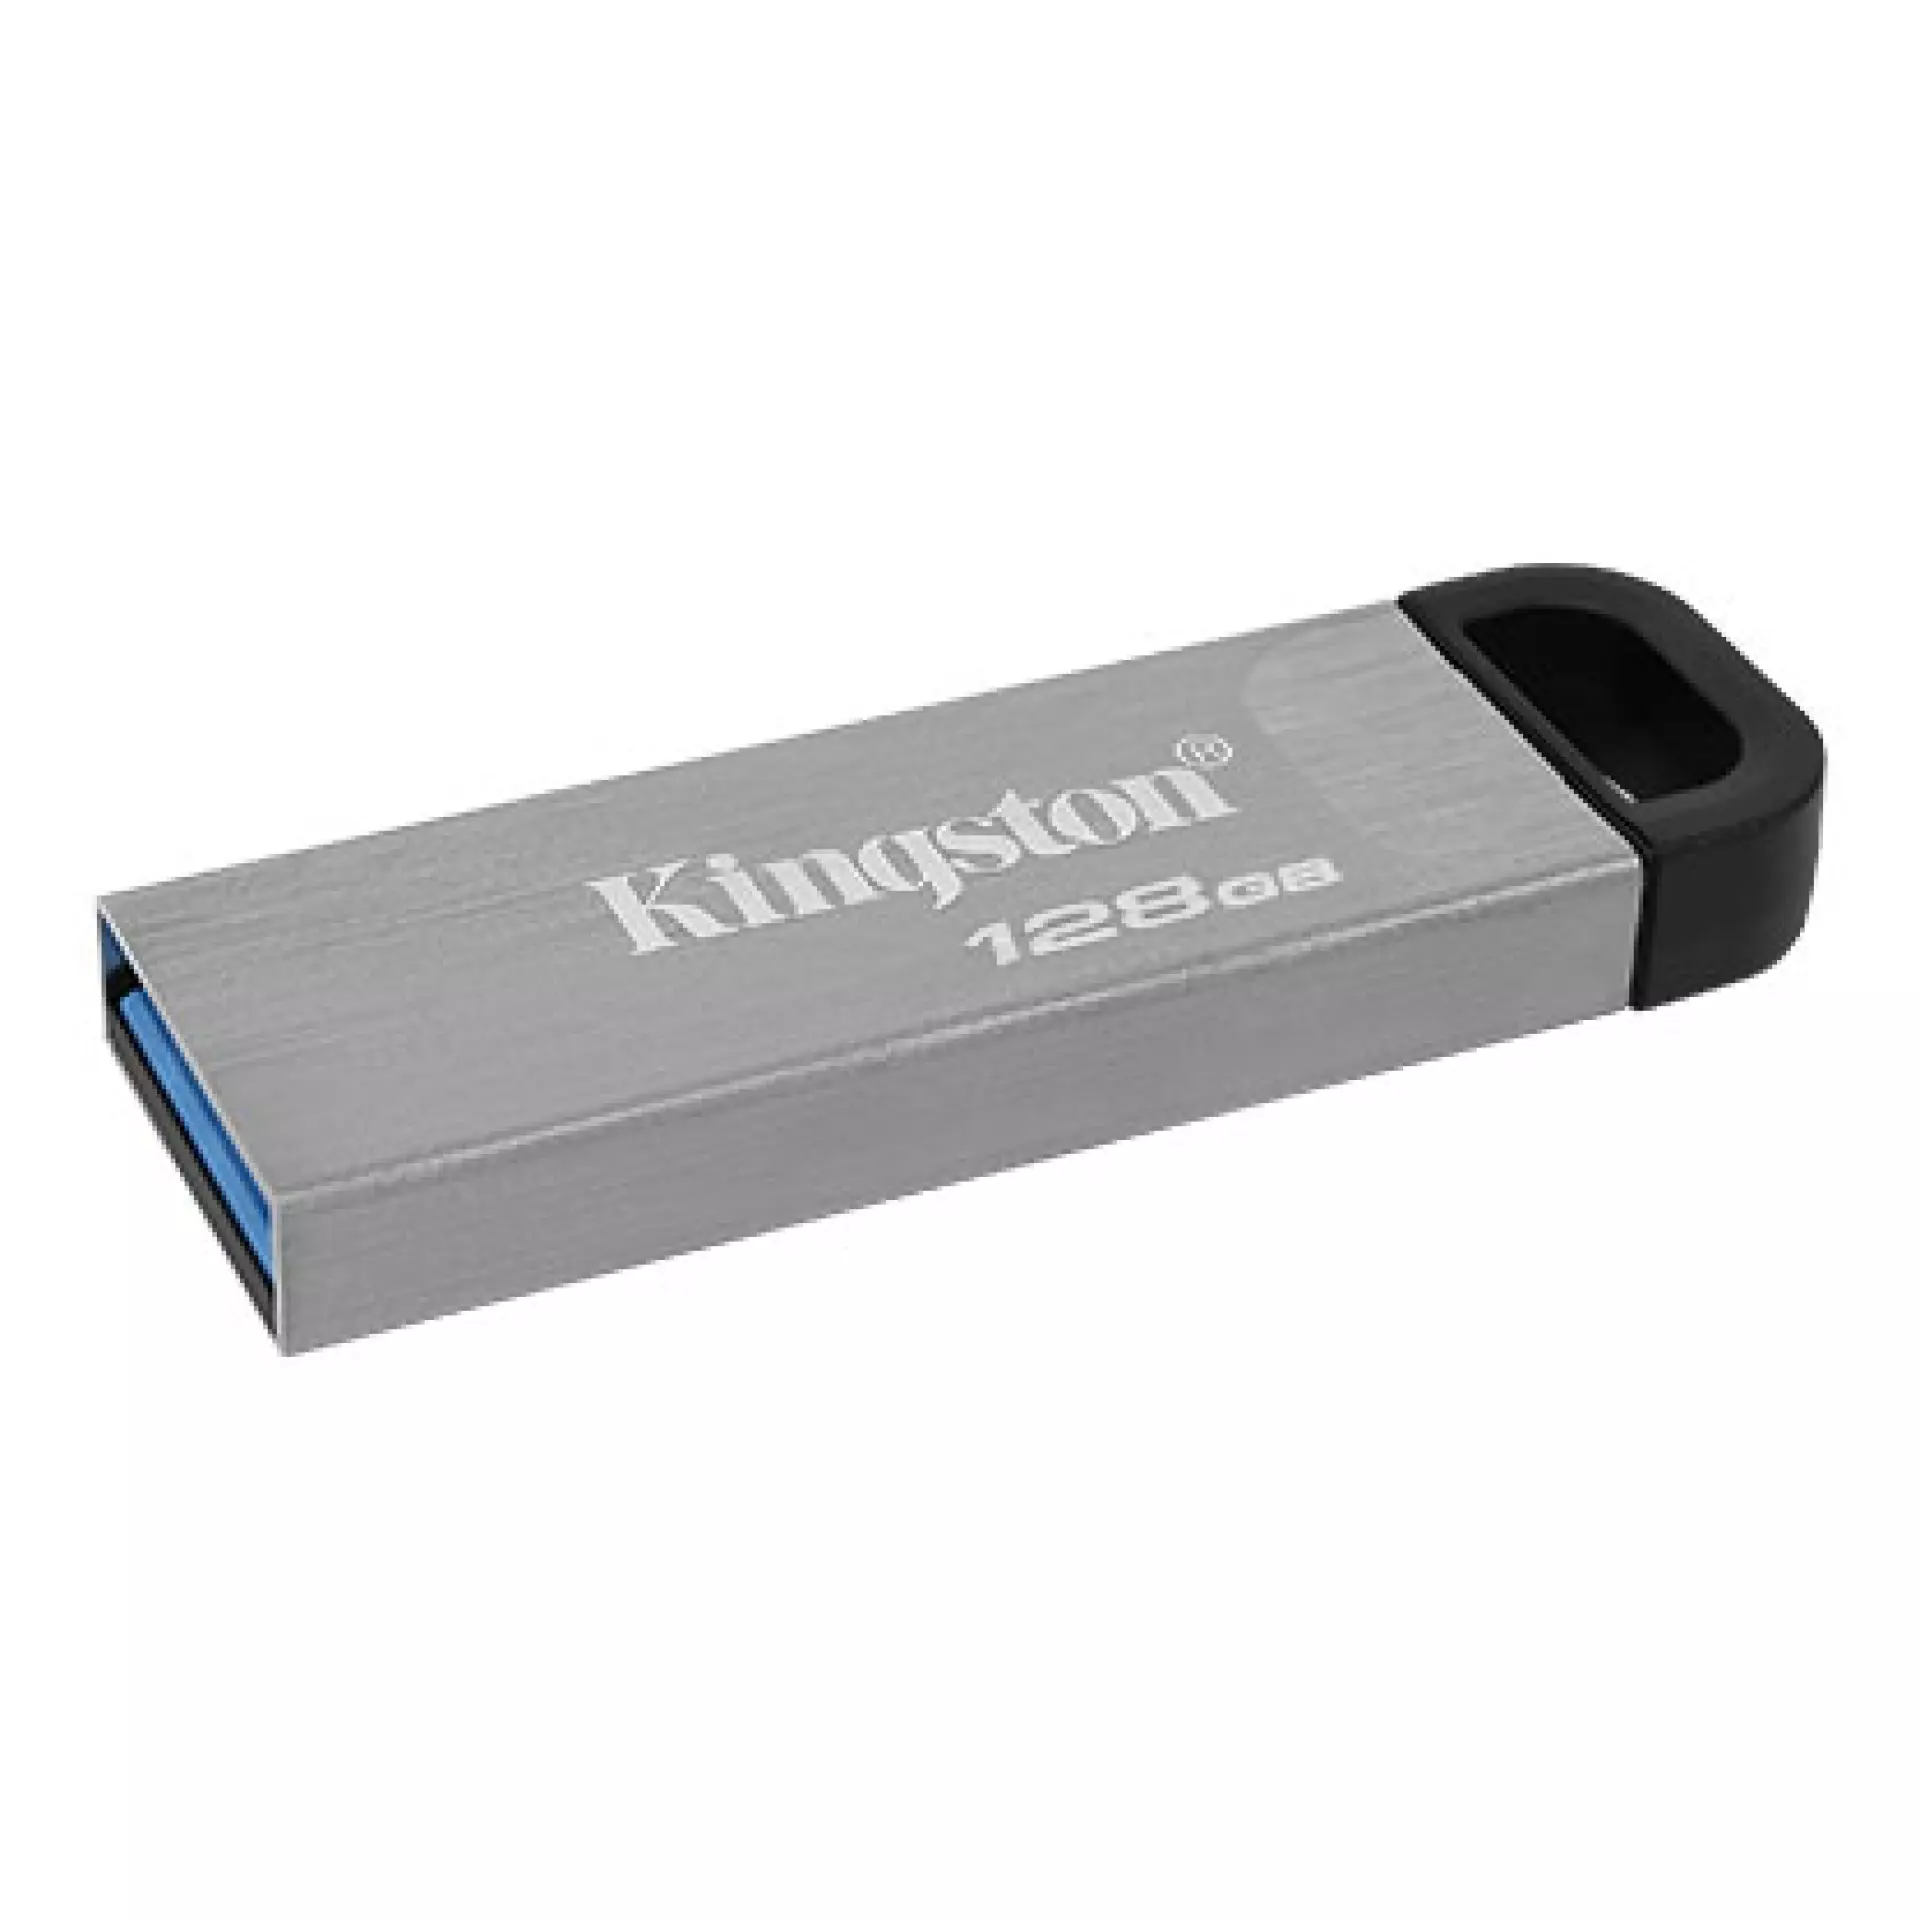 Kingston FD 128GB USB3.2 DTKN